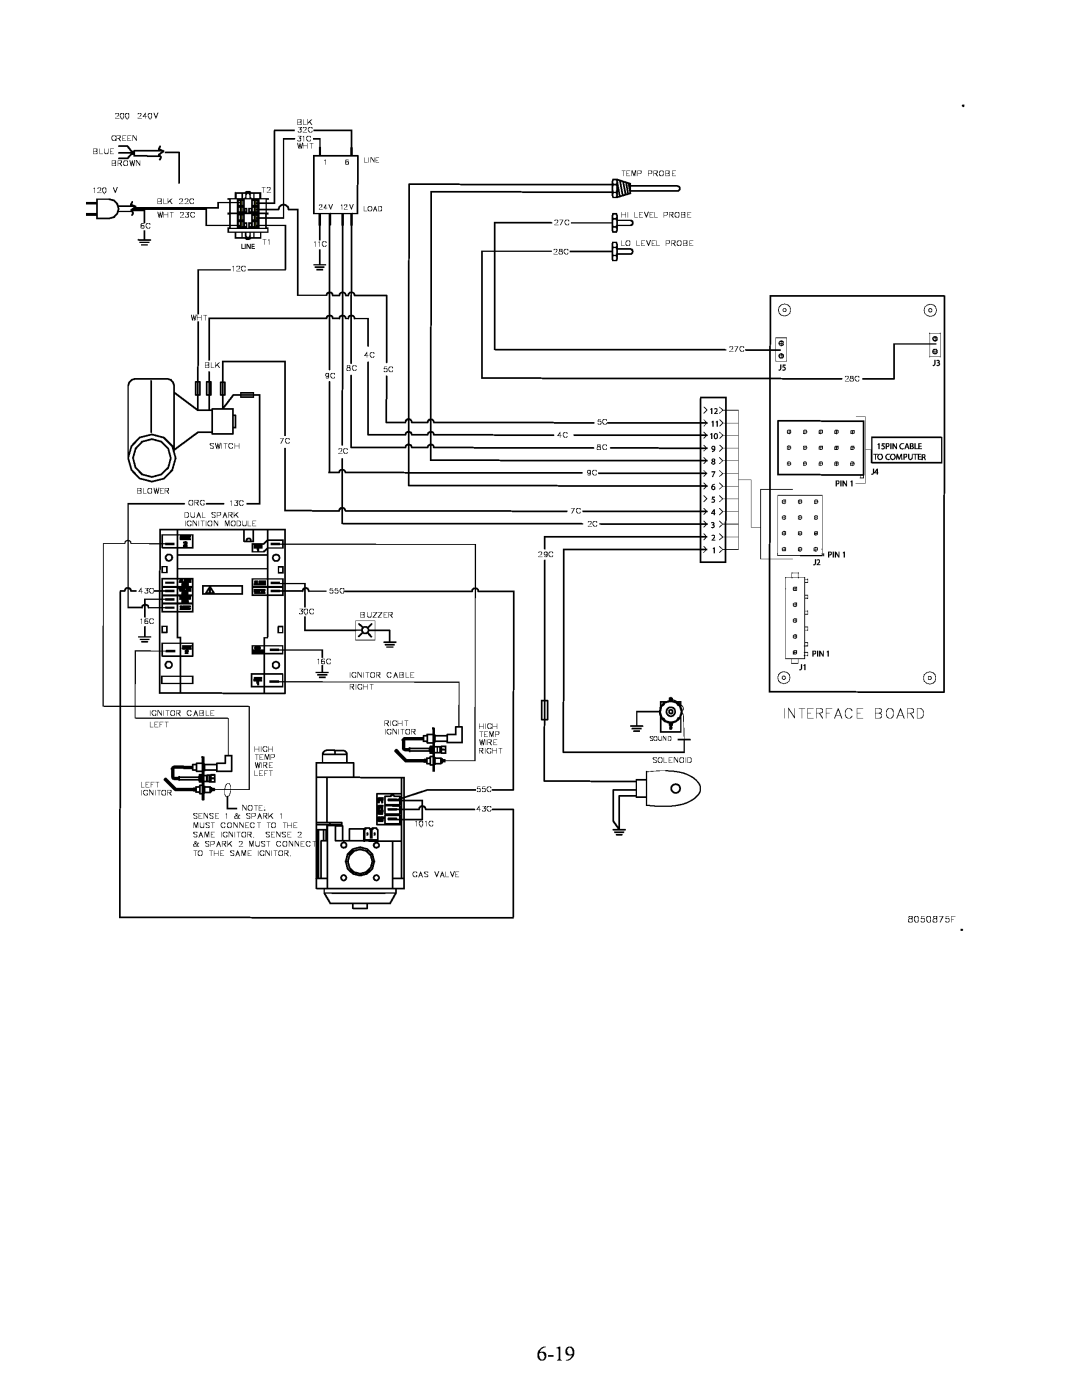 Frymaster FBCR18, FBKR18 Series manual Interface Board, PIN J2 PIN J1, 8050875F 